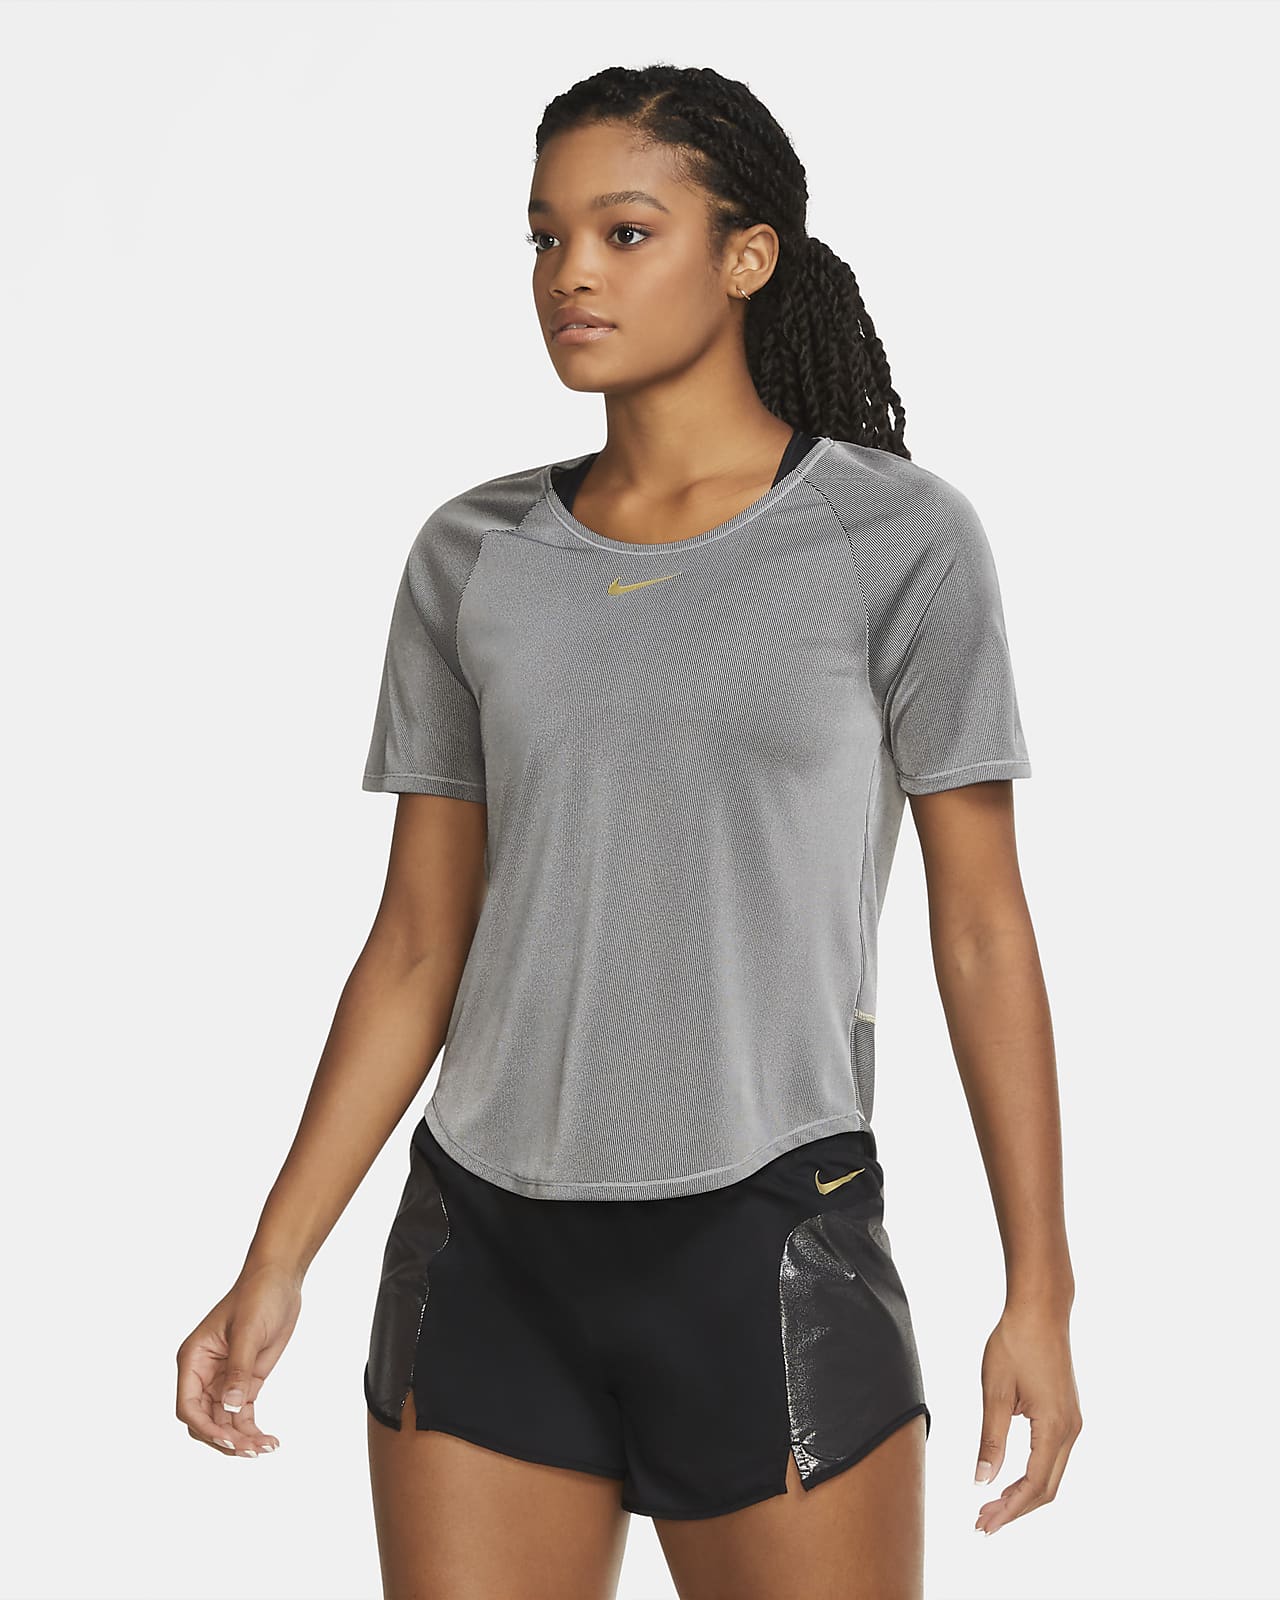 Short-Sleeve Running Top. Nike ID